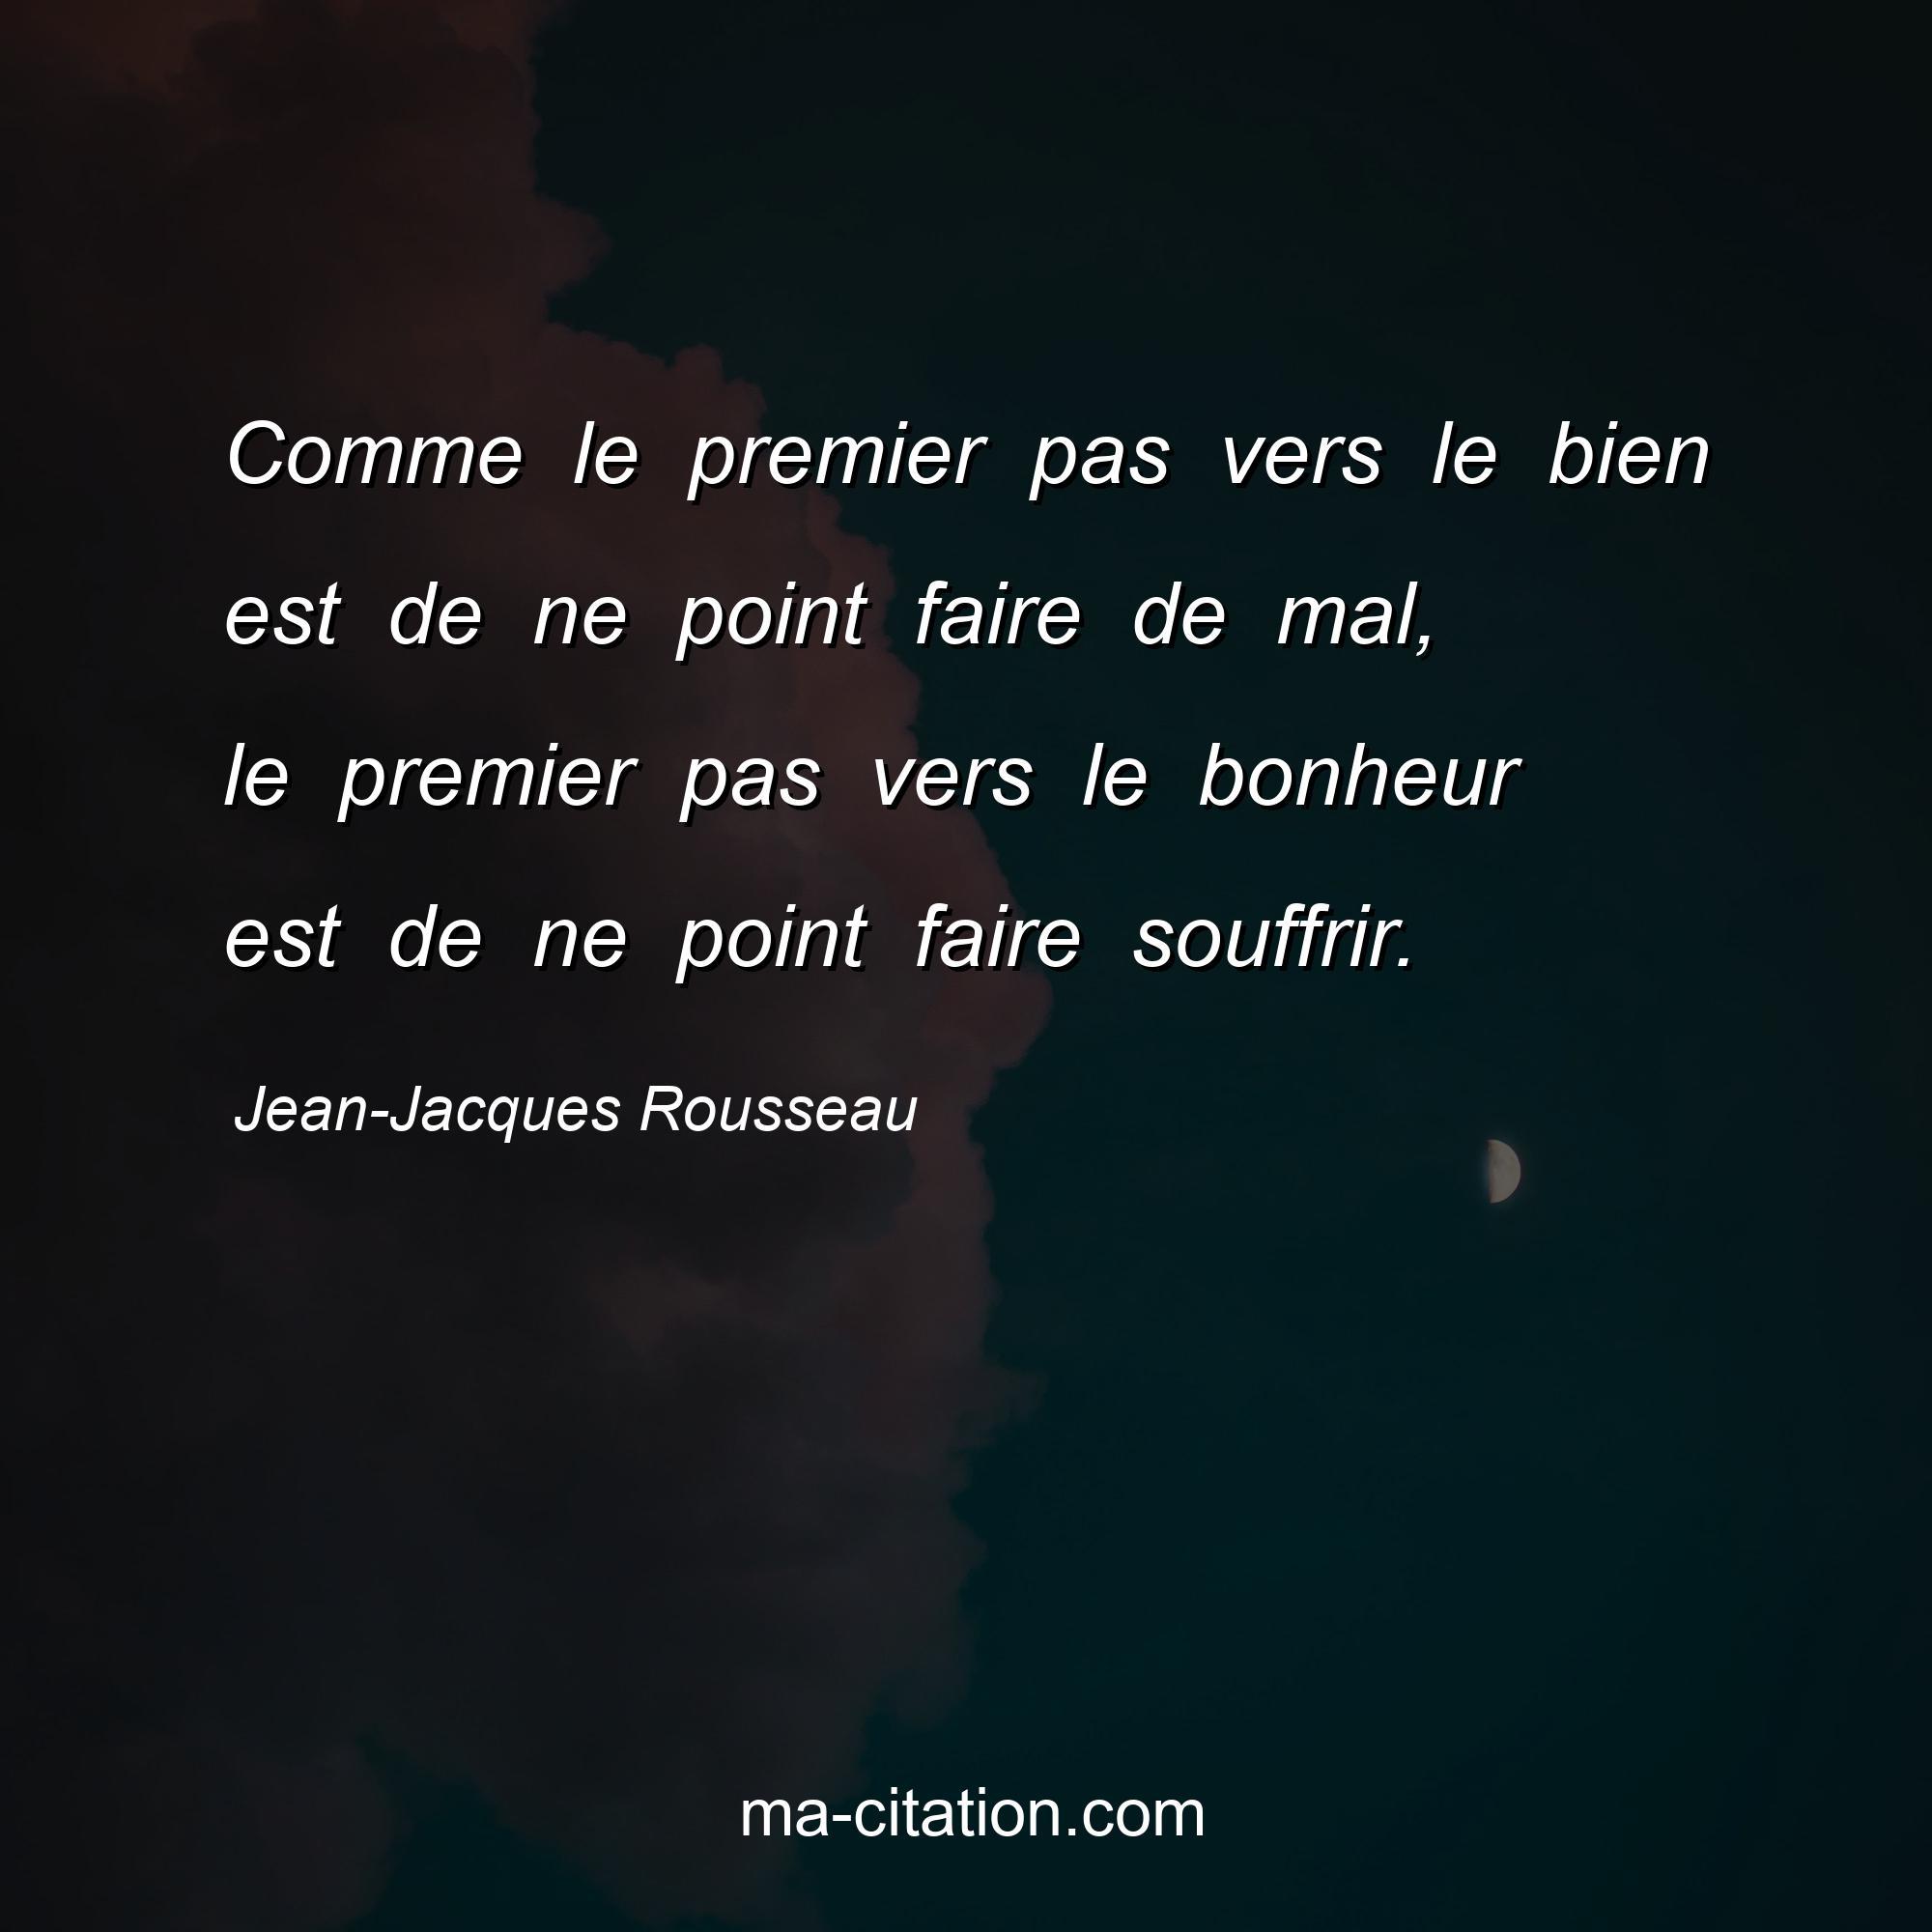 Jean-Jacques Rousseau : Comme le premier pas vers le bien est de ne point faire de mal, le premier pas vers le bonheur est de ne point faire souffrir.